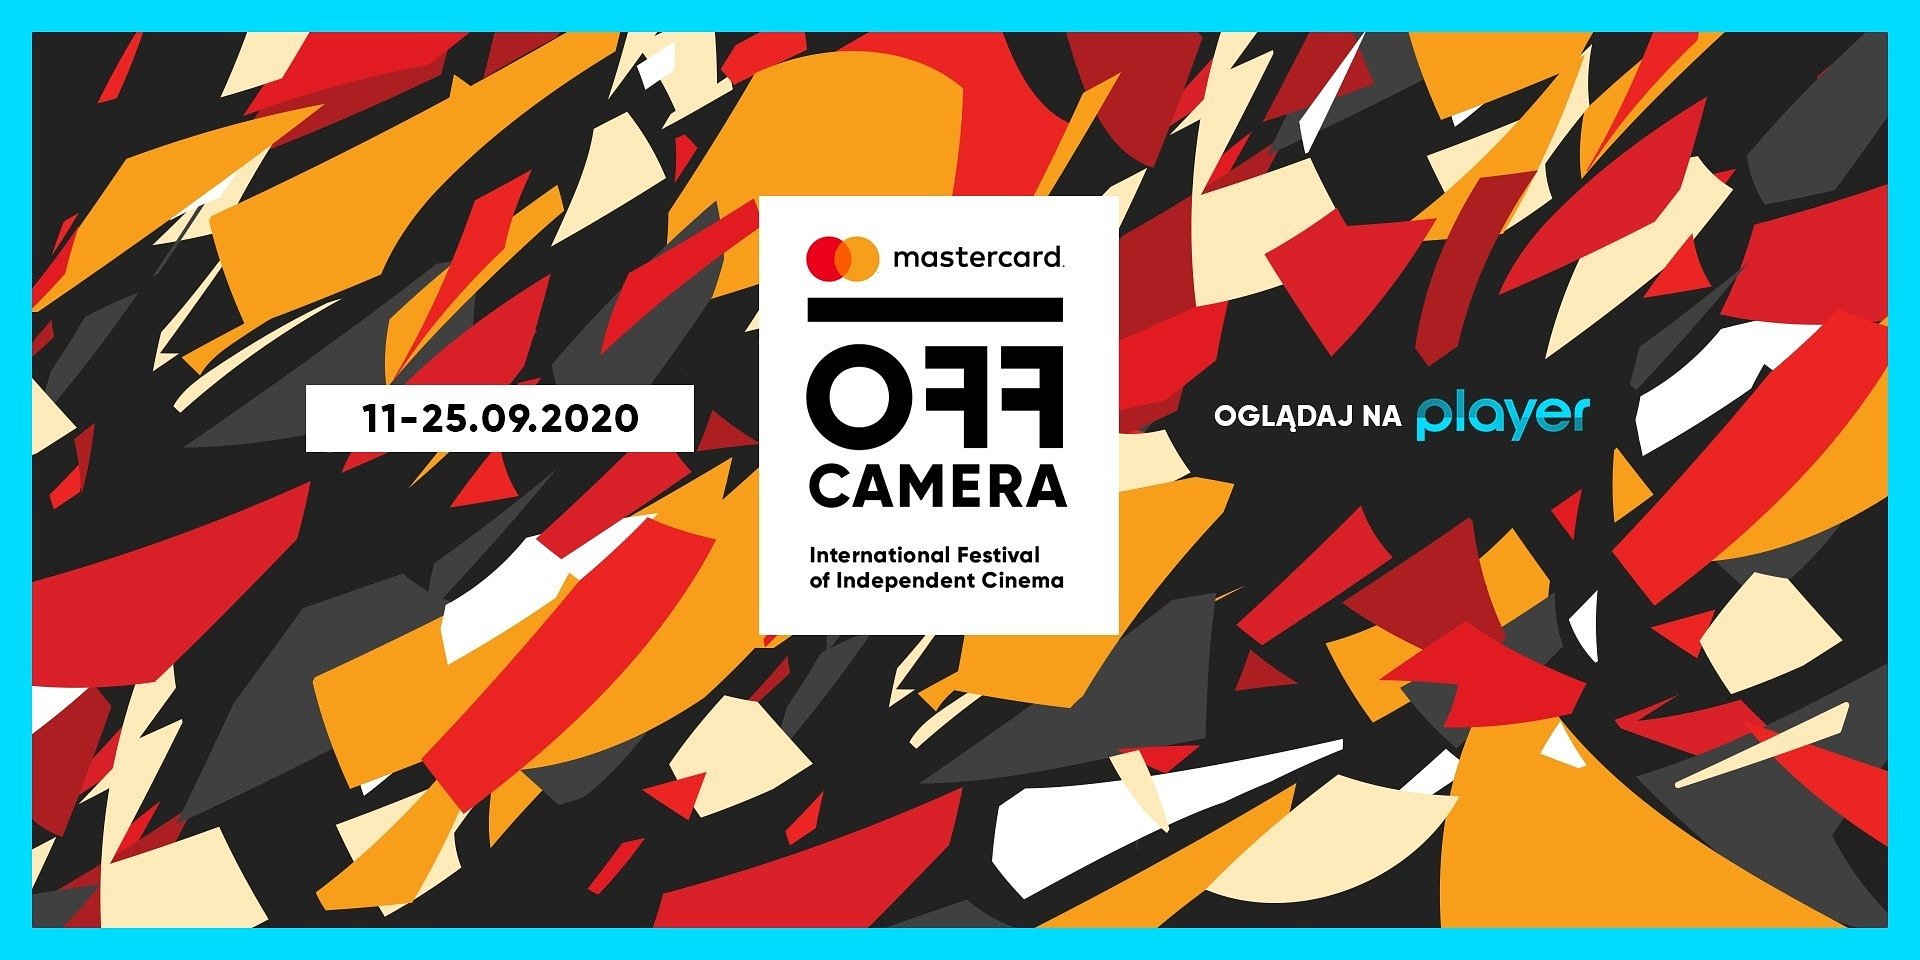 Festiwal Mastercard OFF CAMERA - wszystkie ważne wydarzenia 13. edycji już od dziś na żywo w Player!